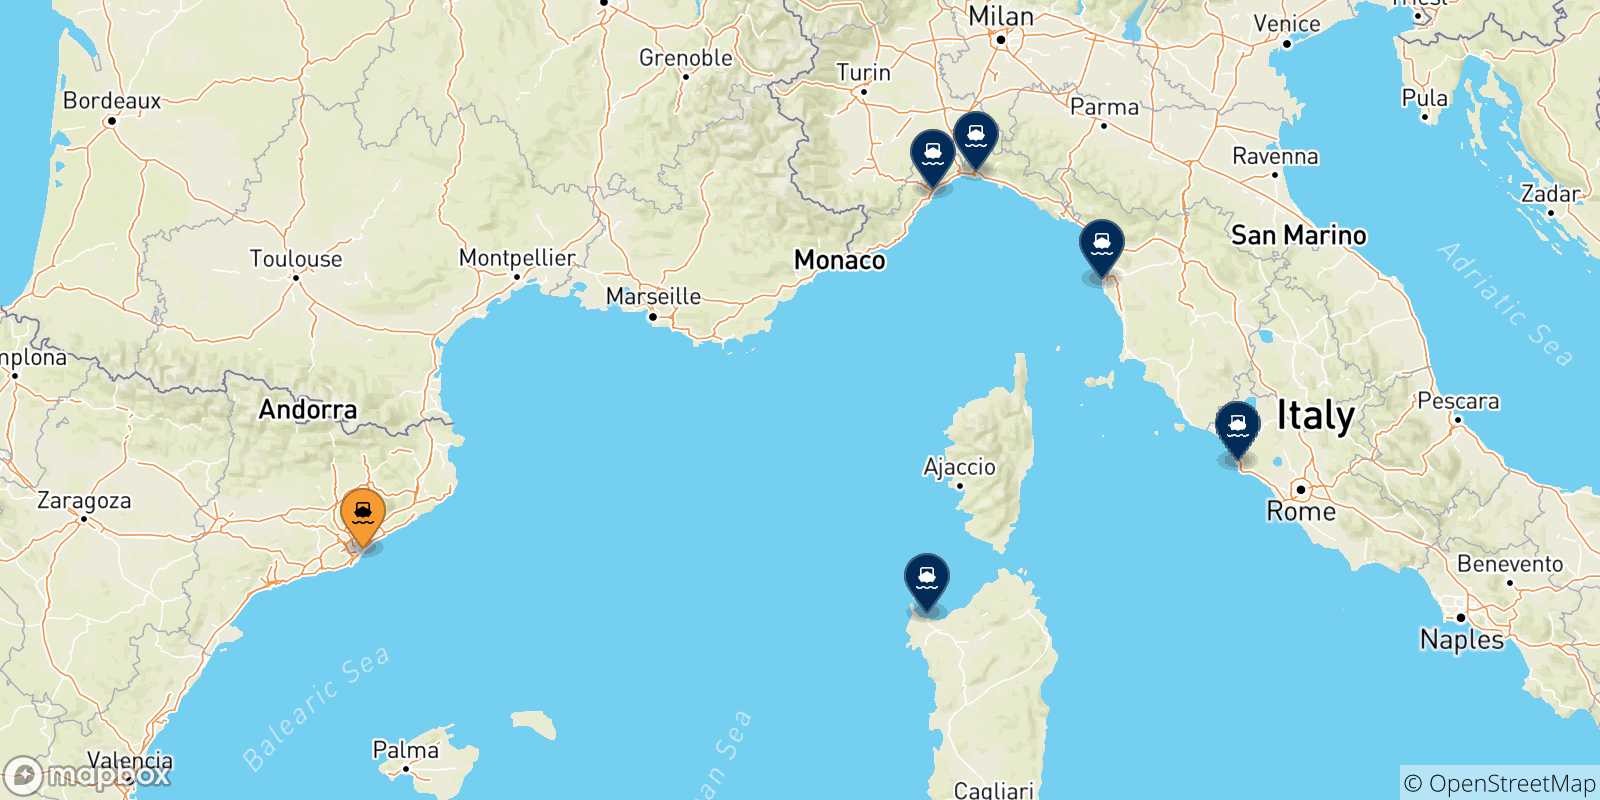 Mappa delle possibili rotte tra la Spagna e l'Italia